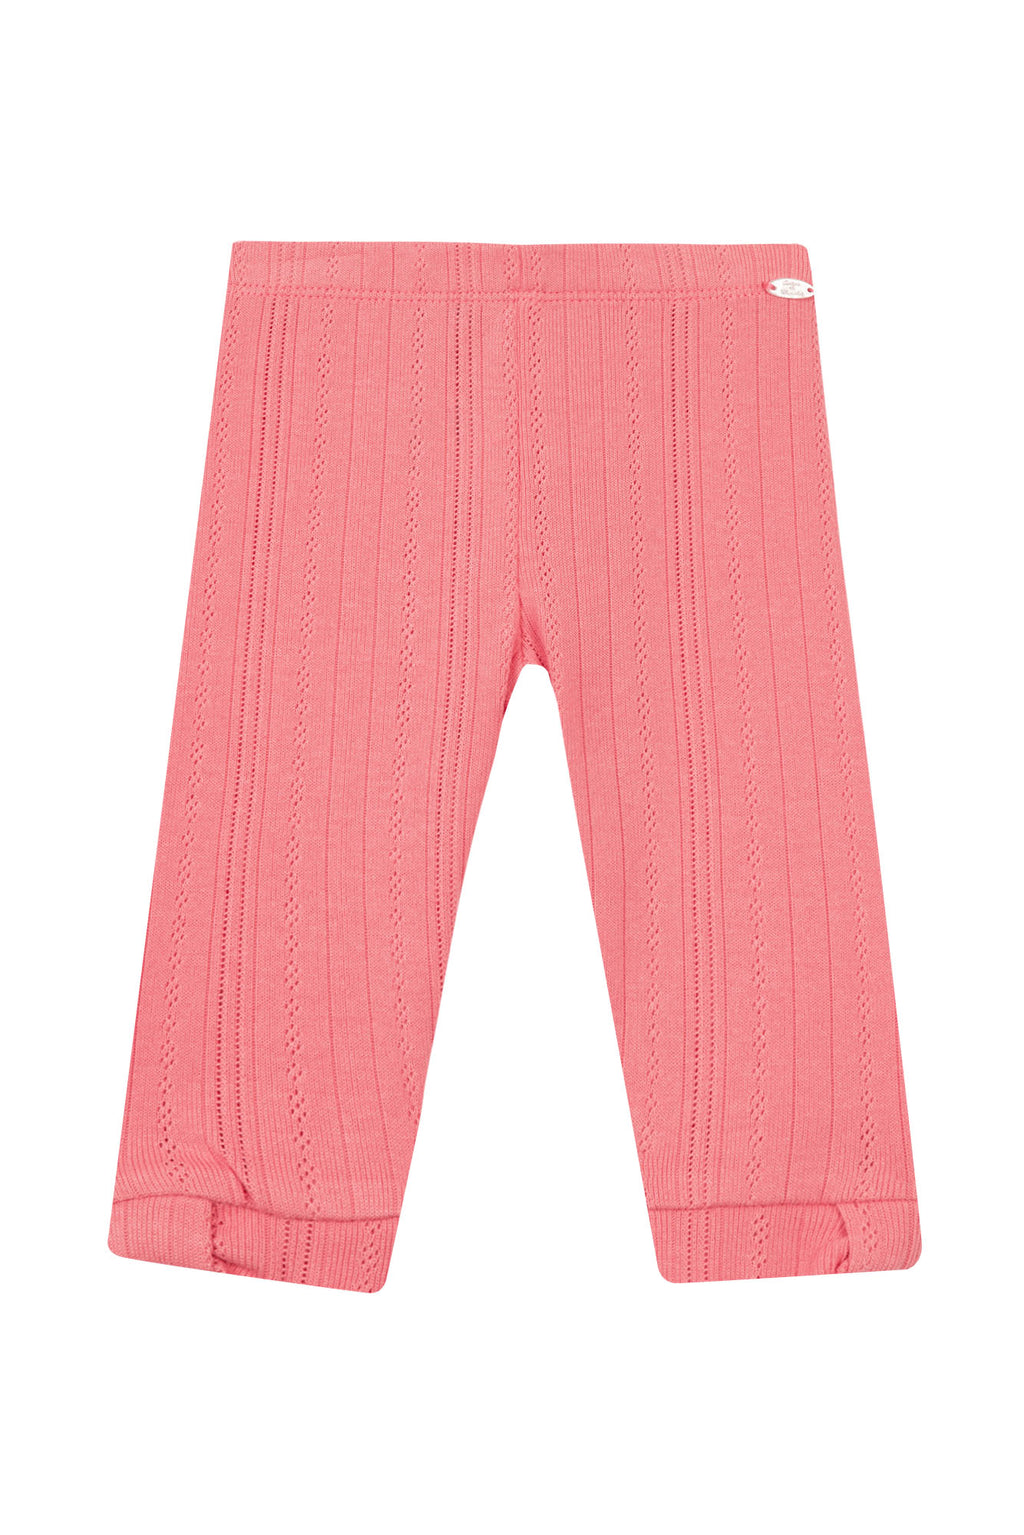 Legging - Pink Knitwear pointed